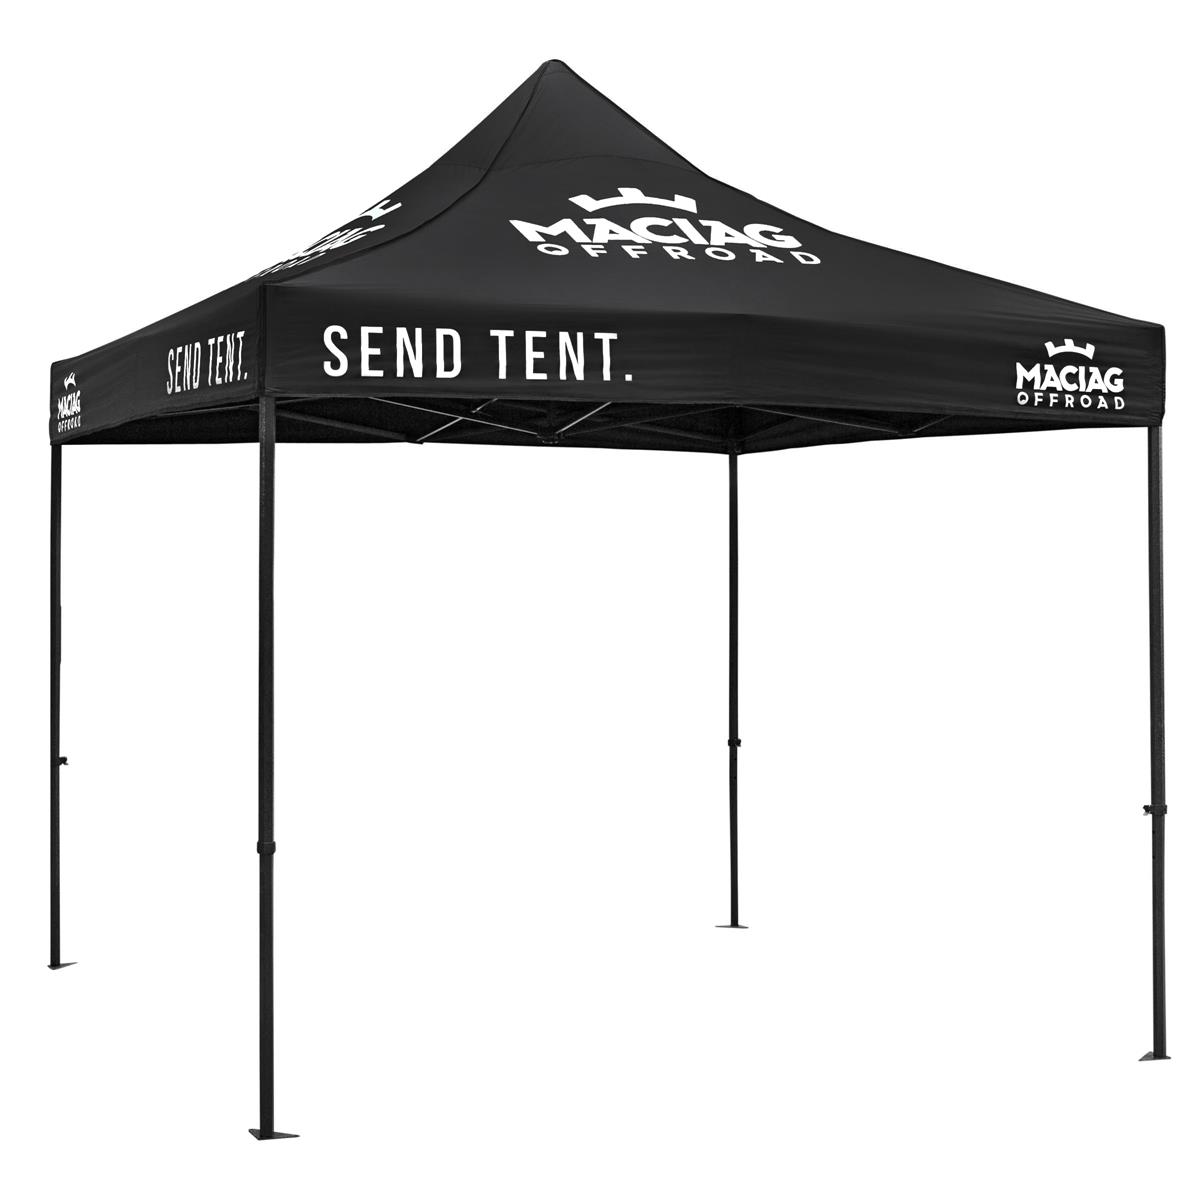 https://www.maciag-offroad.de/shop/artikelbilder/normal/115497/maciag-offroad-rennzelt-3x3-m-race-tent-3x3-m-send-tent-26.jpg